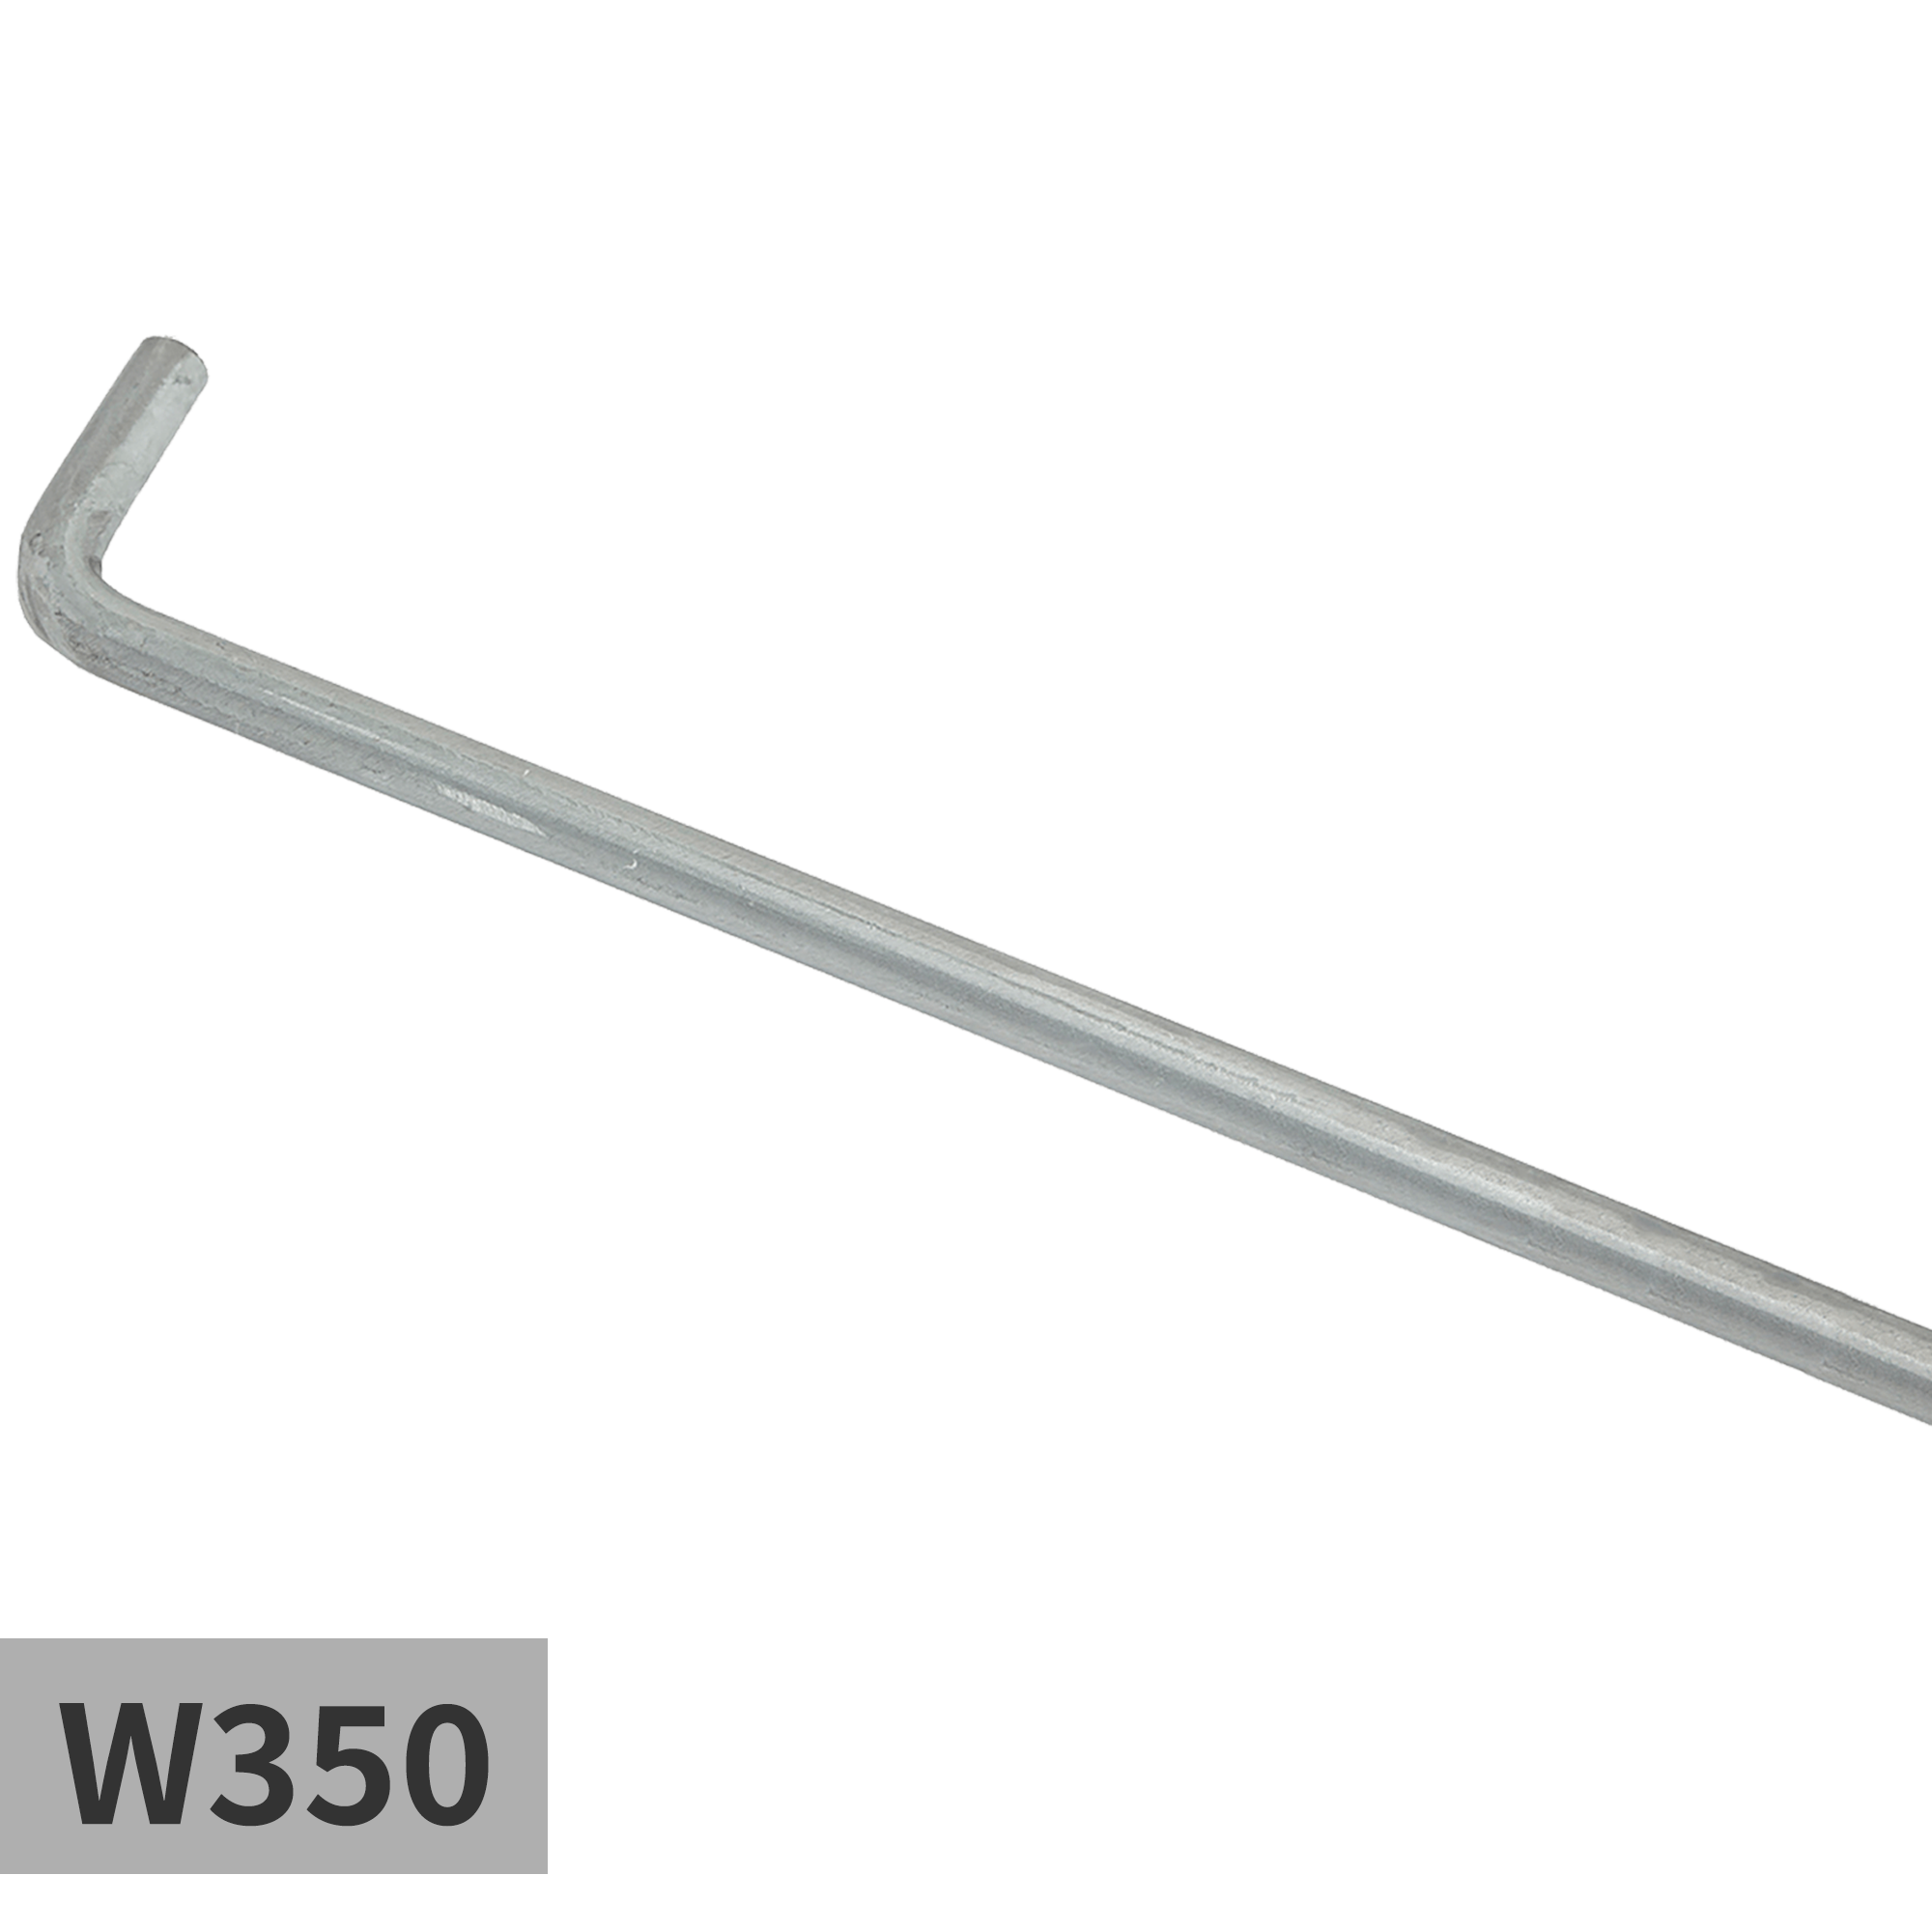 溶融亜鉛メッキの把手 φ9 W350